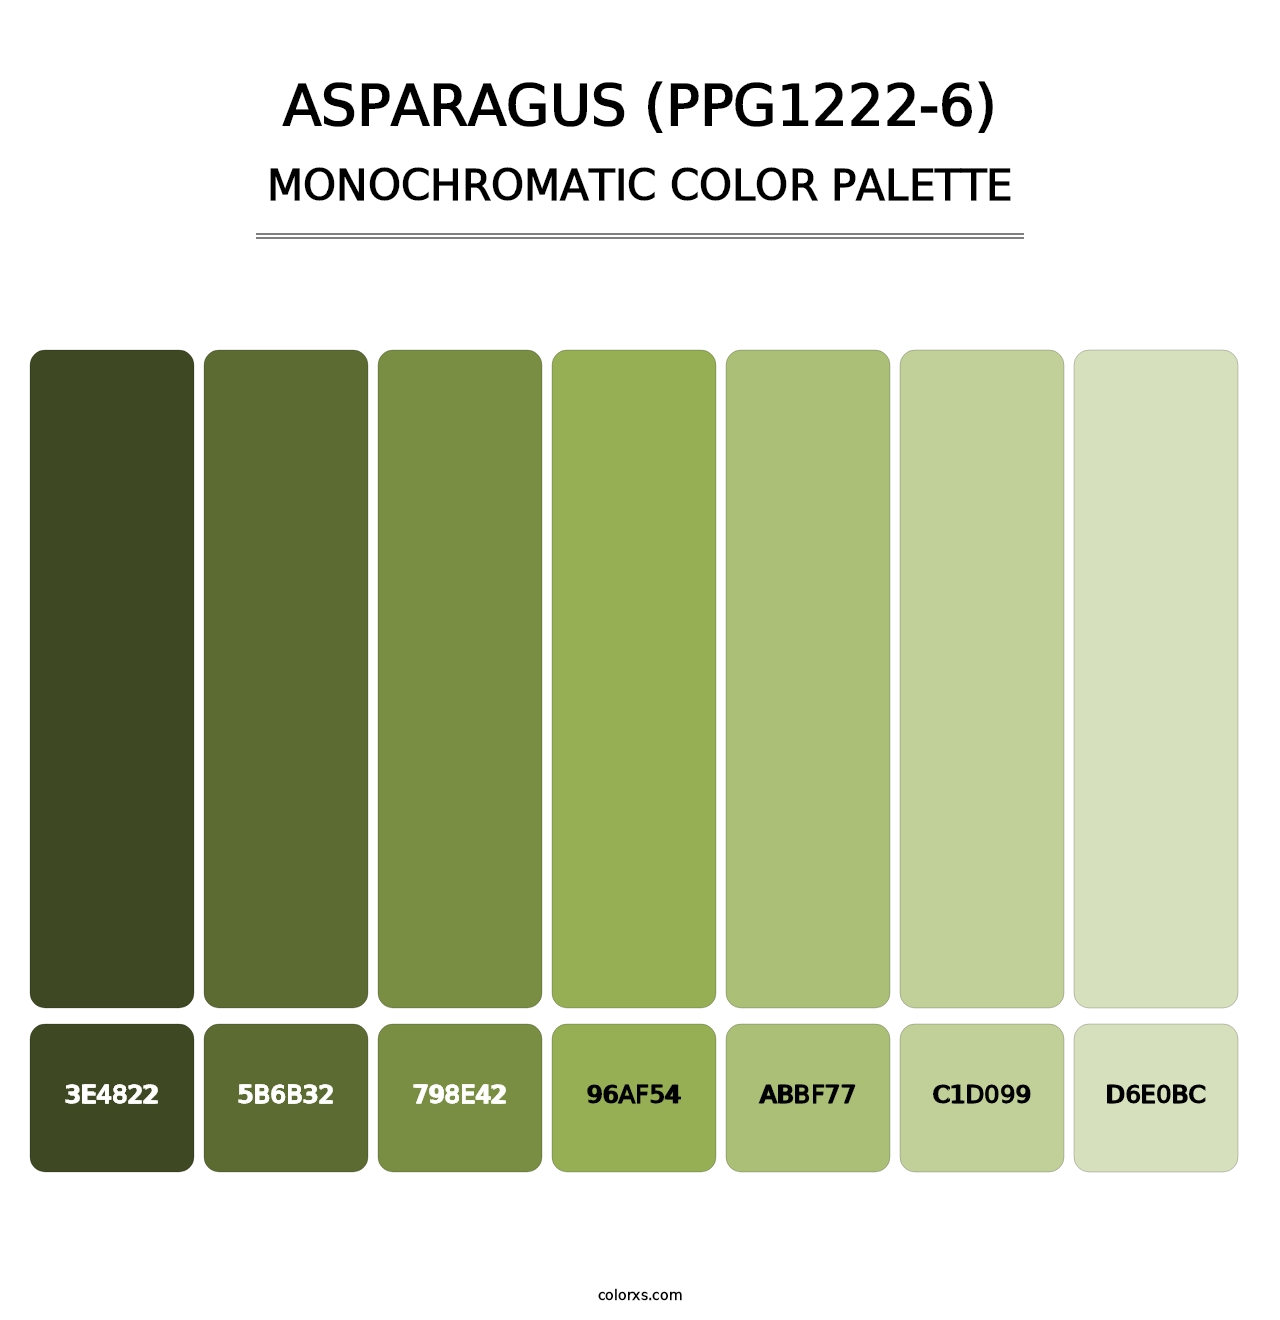 Asparagus (PPG1222-6) - Monochromatic Color Palette